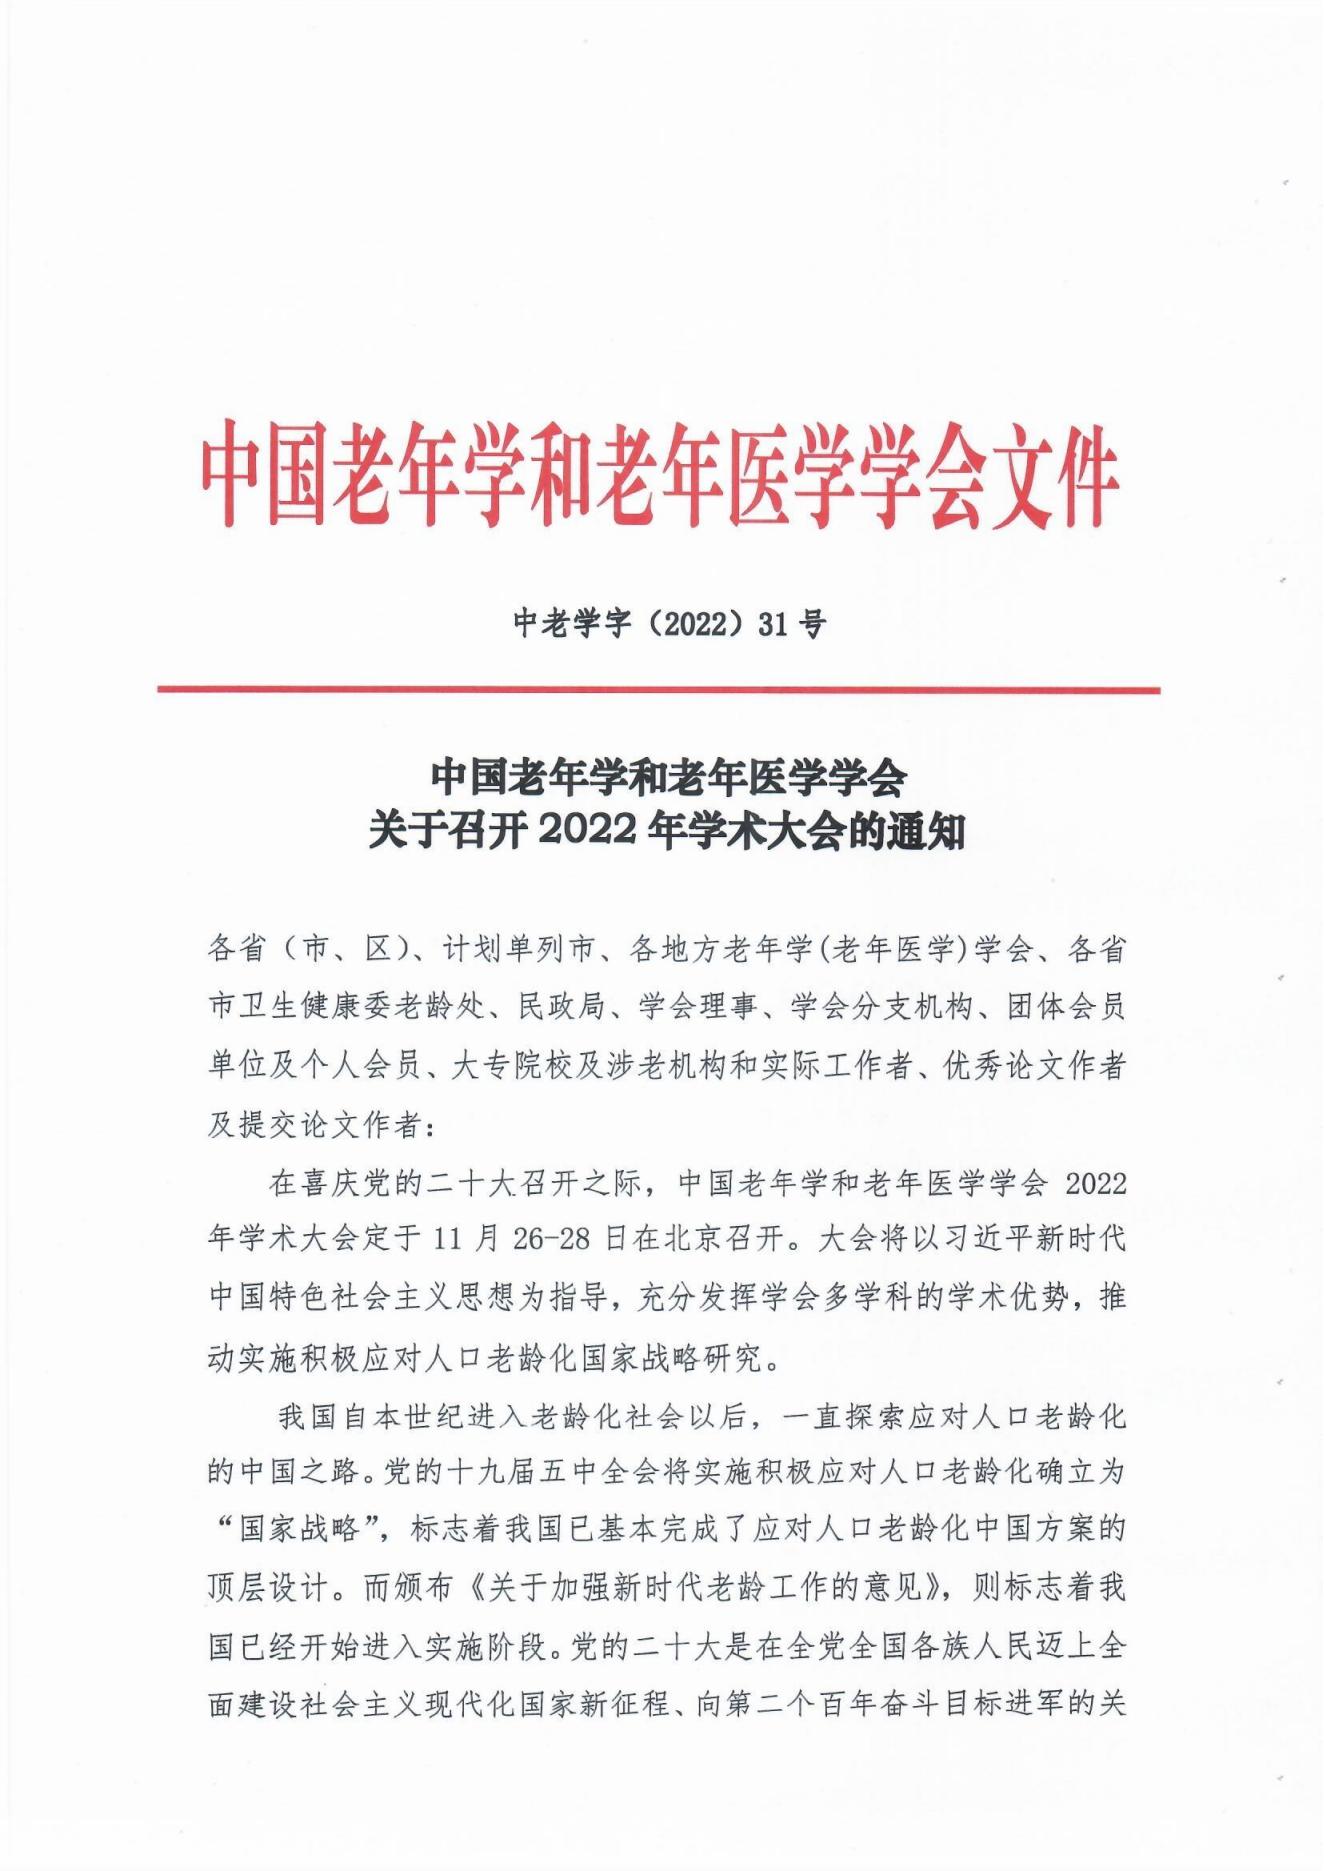 （31号文）中国老年学和老年医学学会关于召开2022年学术大会的通知(1)_00.jpg